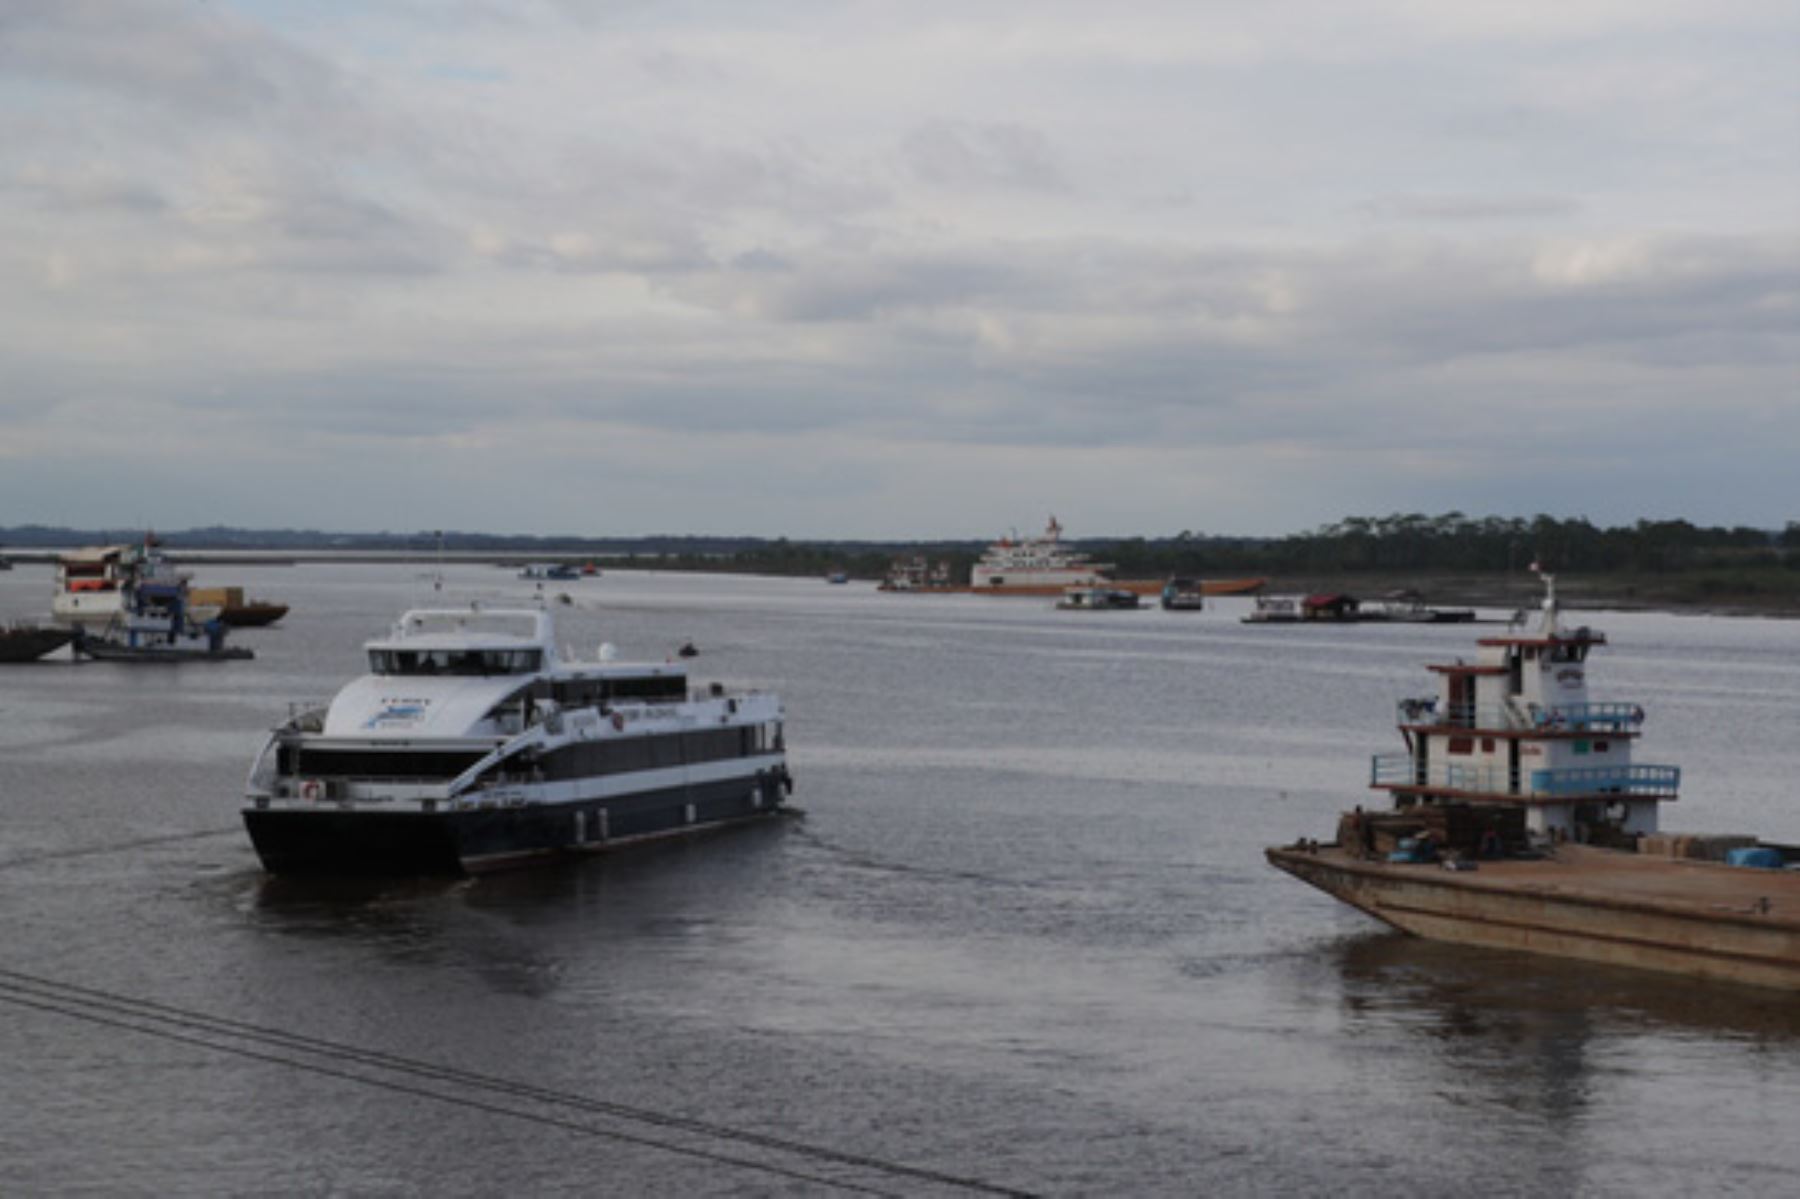 El ferry Amazonas I inició sus operaciones el 14 de marzo del 2017 y desde esa fecha ha transportado a 174,651 pasajeros.